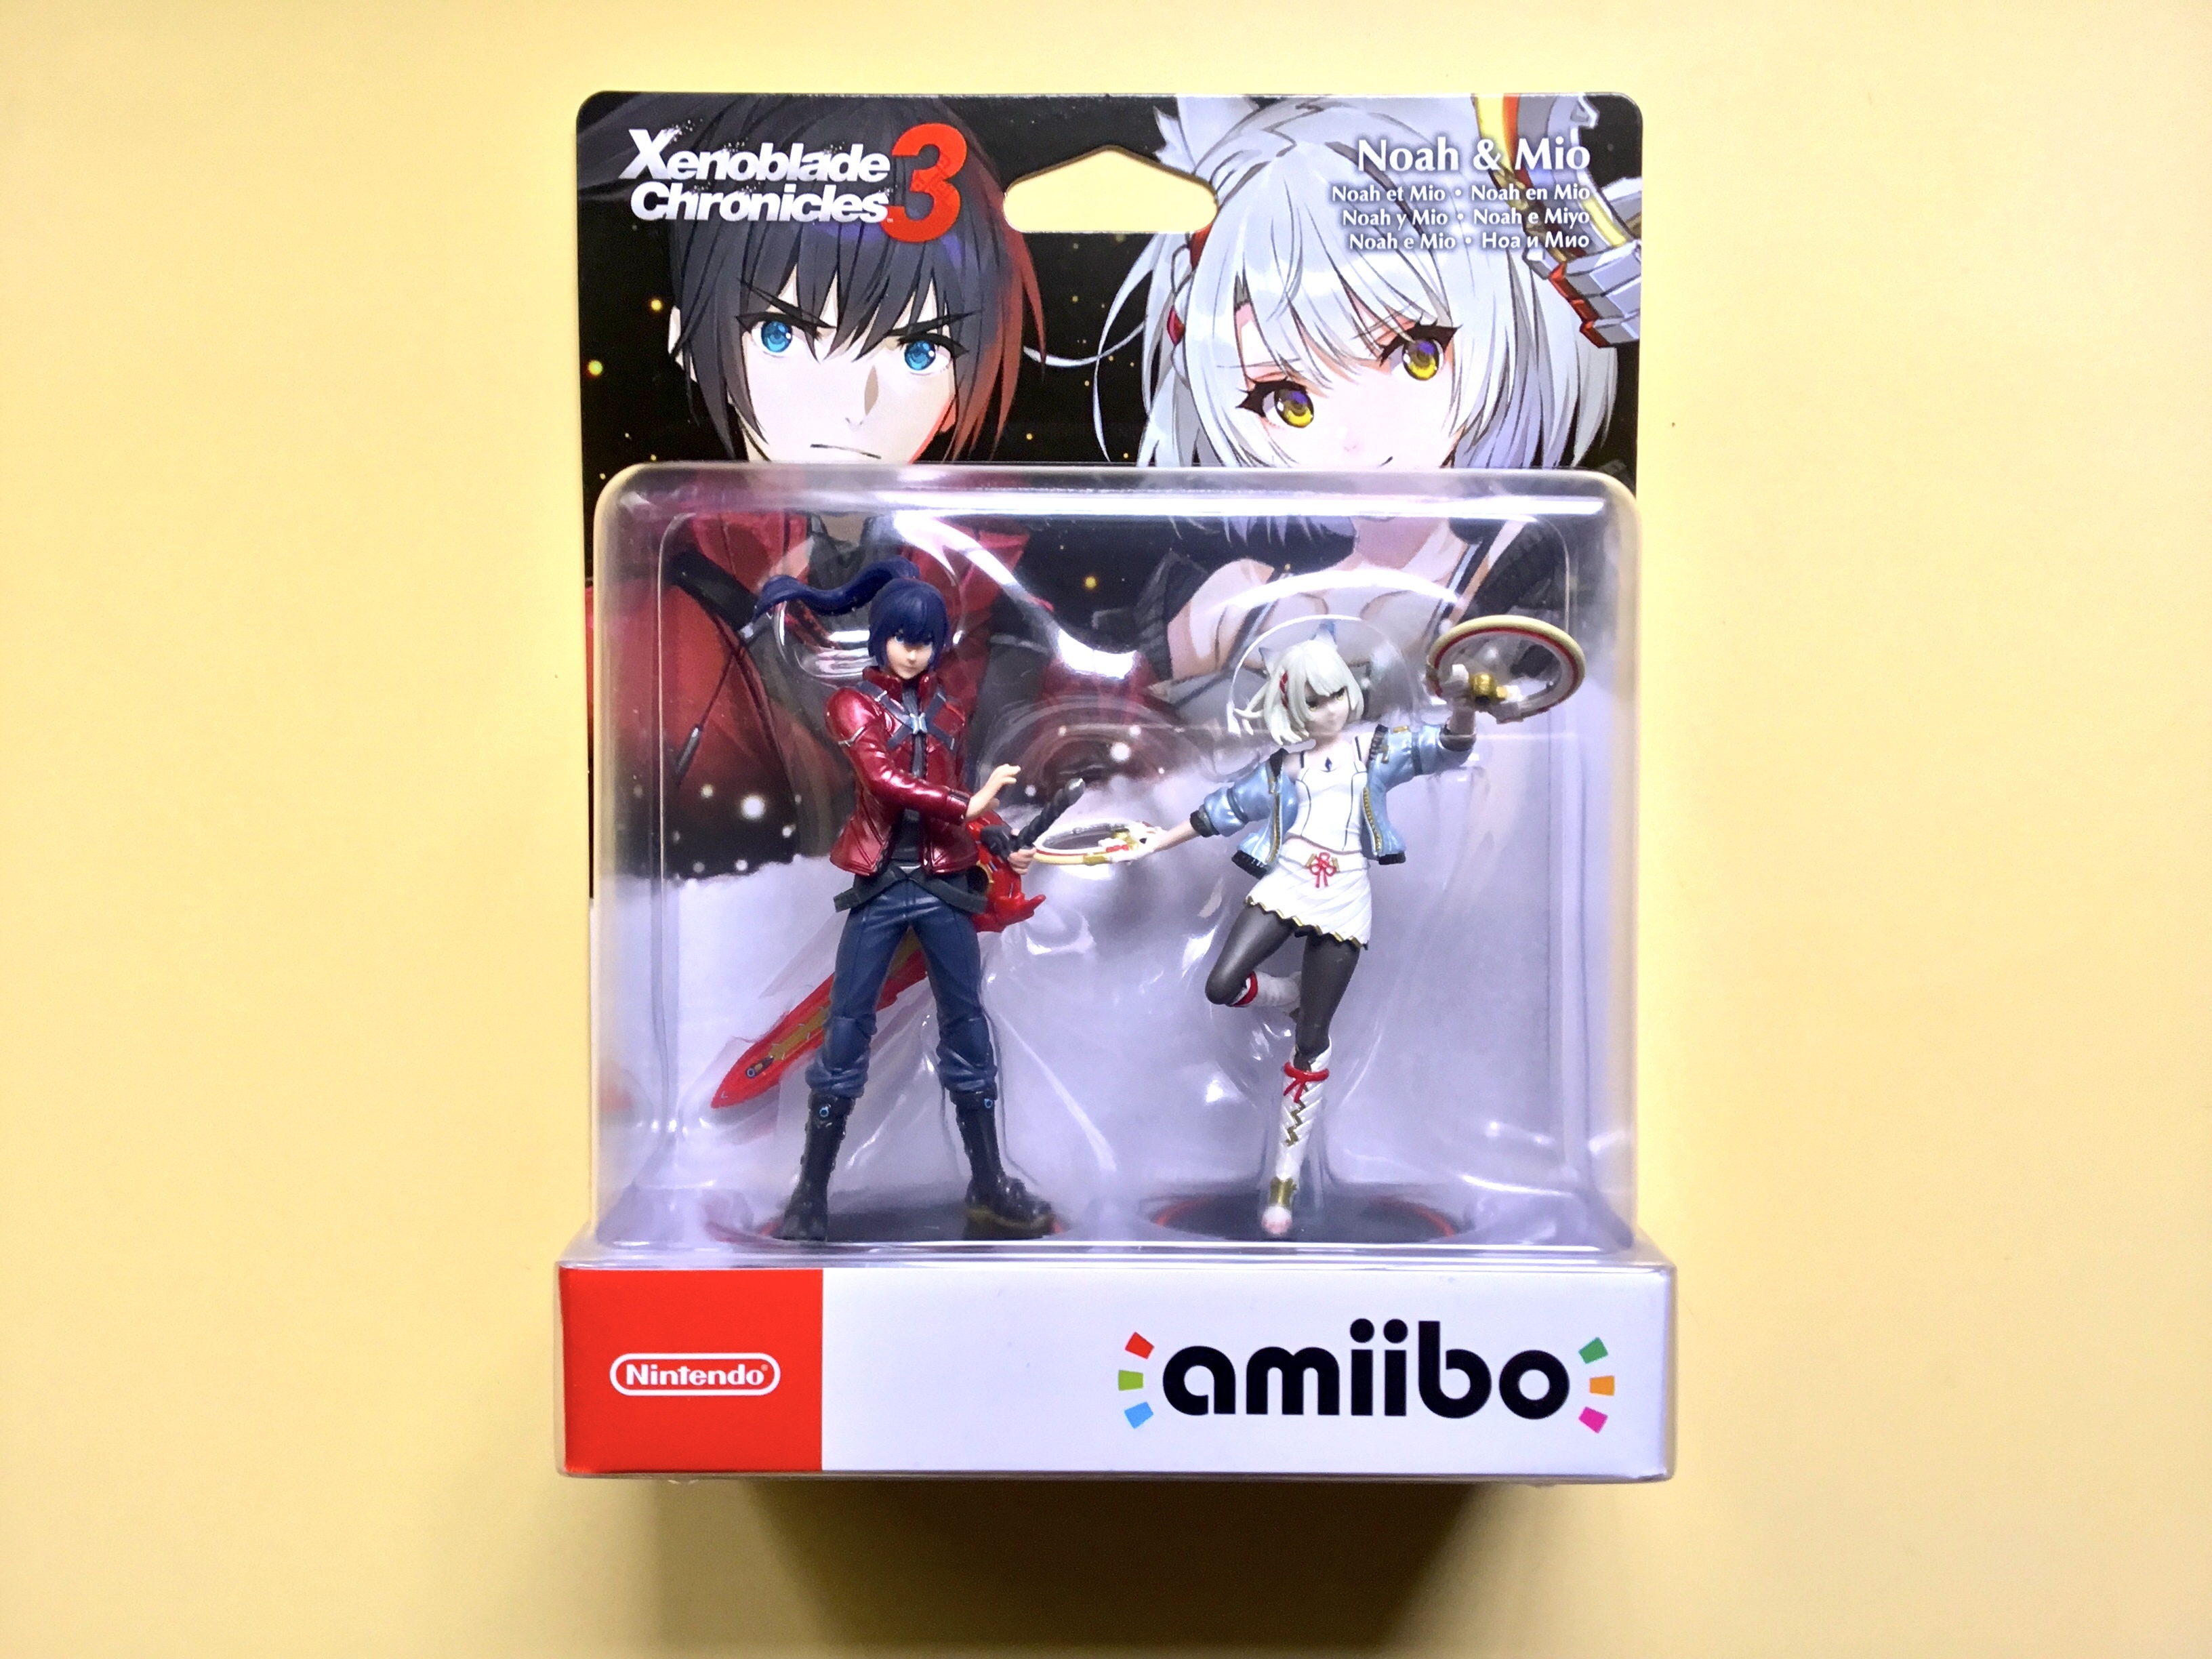 Comprar Amiibo Sora Nuevo ¡ENVIO RÁPIDO!